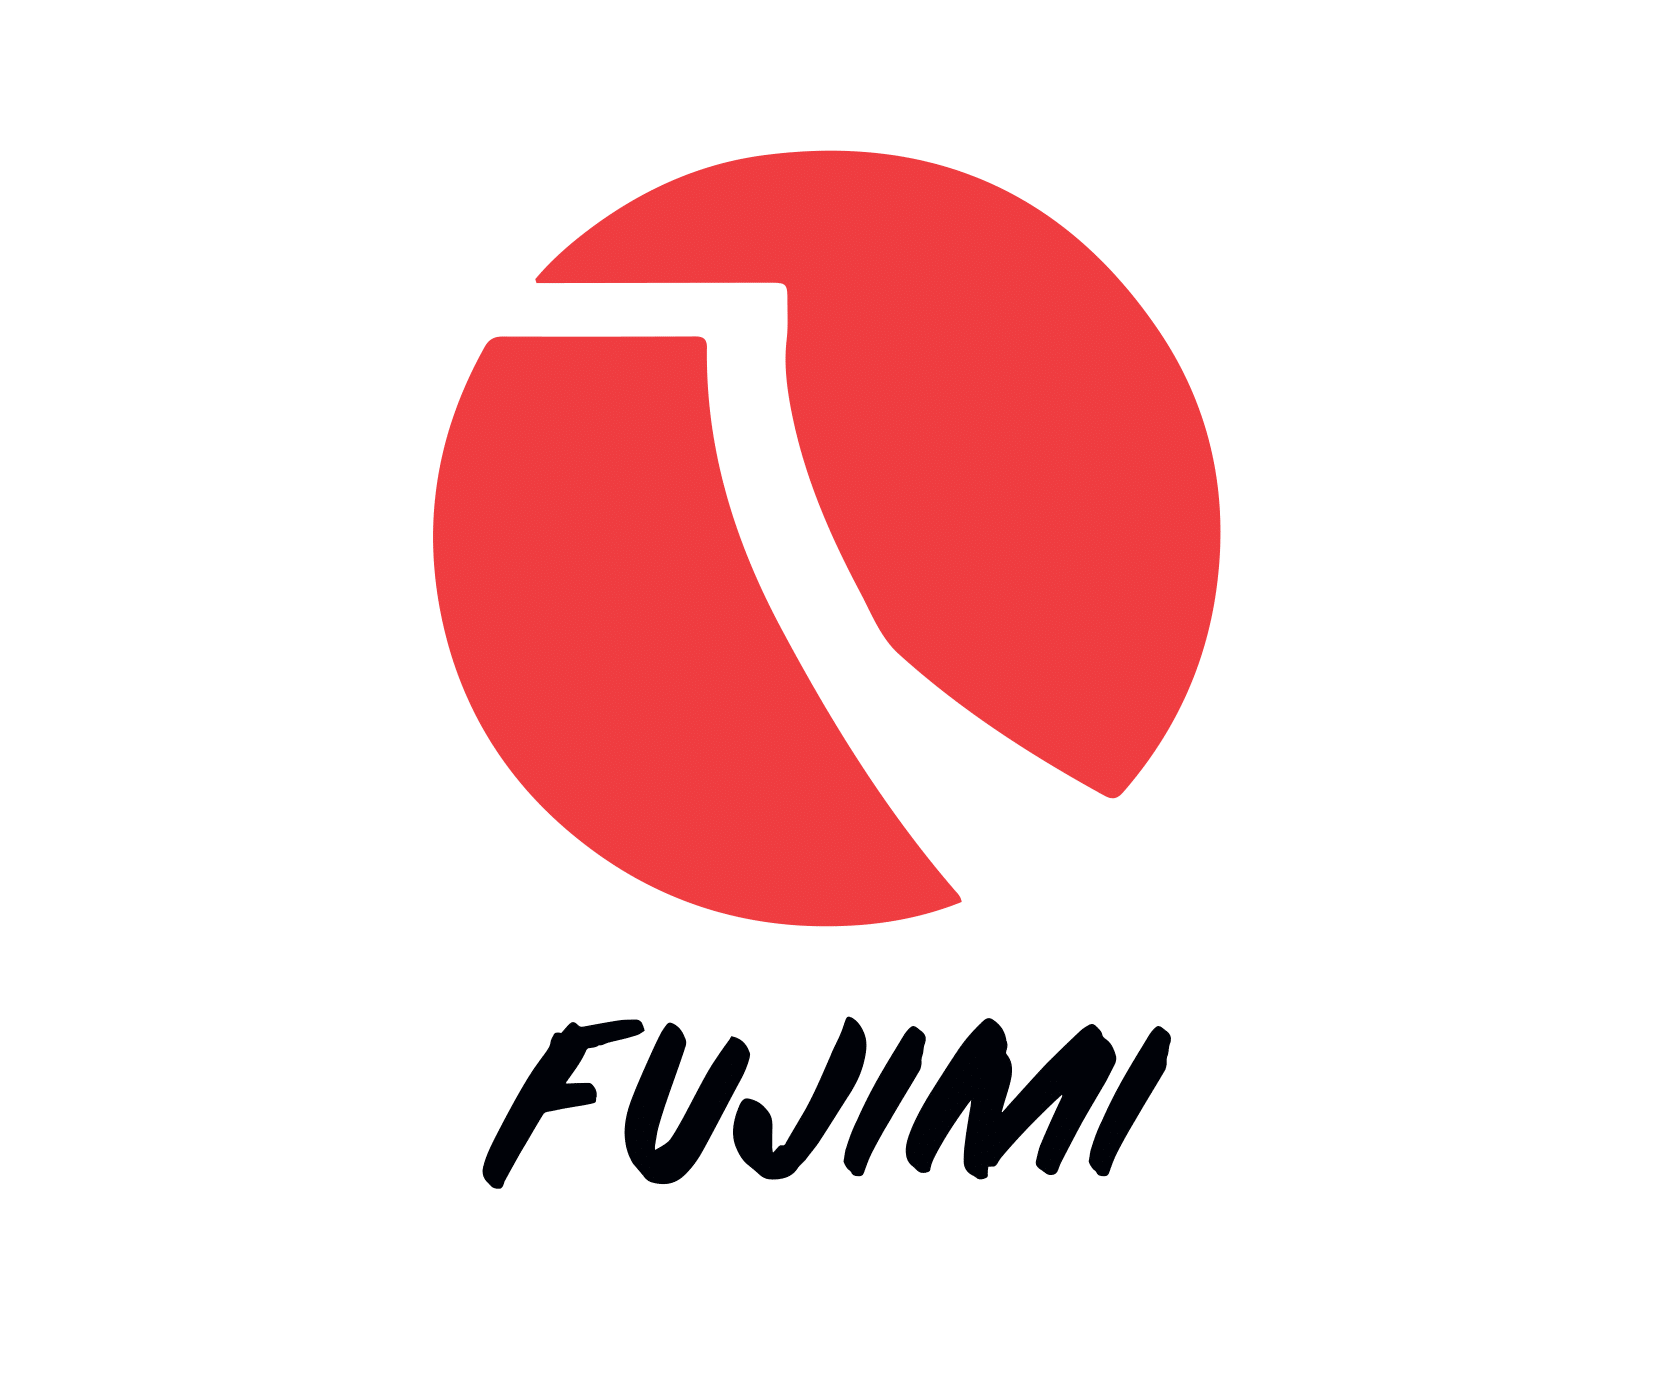 FUJIMI_logo_black_text-1 (1).png